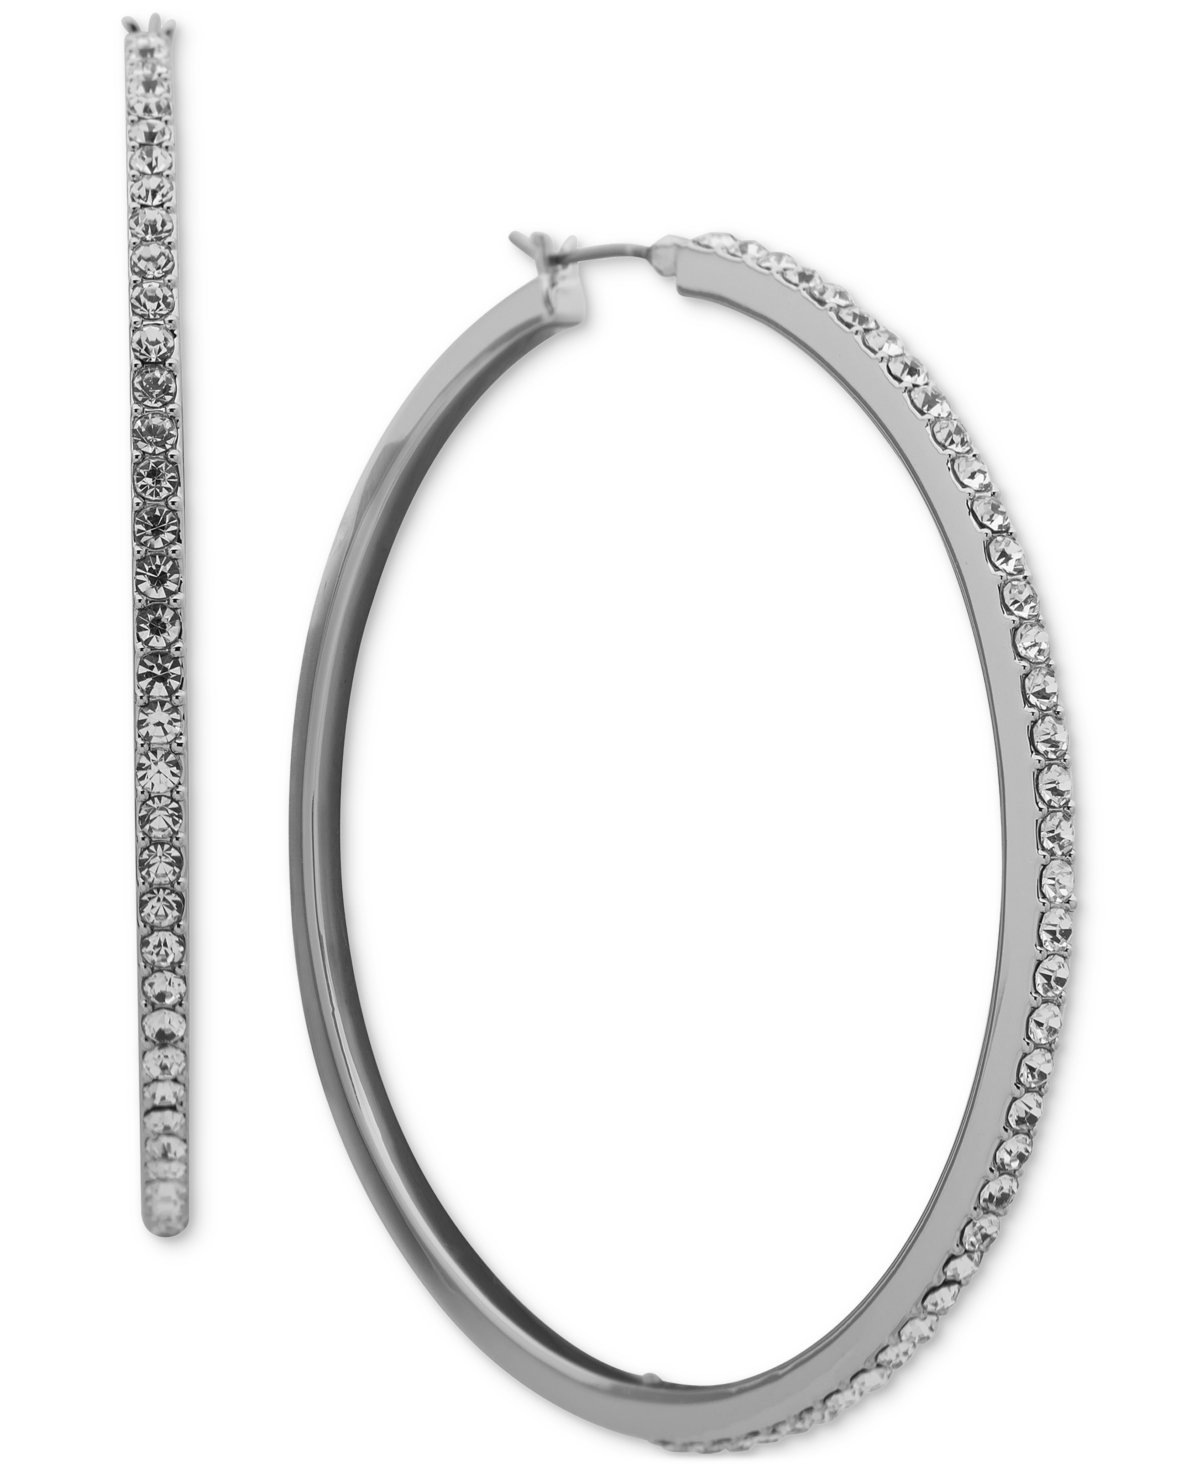 Large Pave Hoop Earrings, 2.2" - Crystal